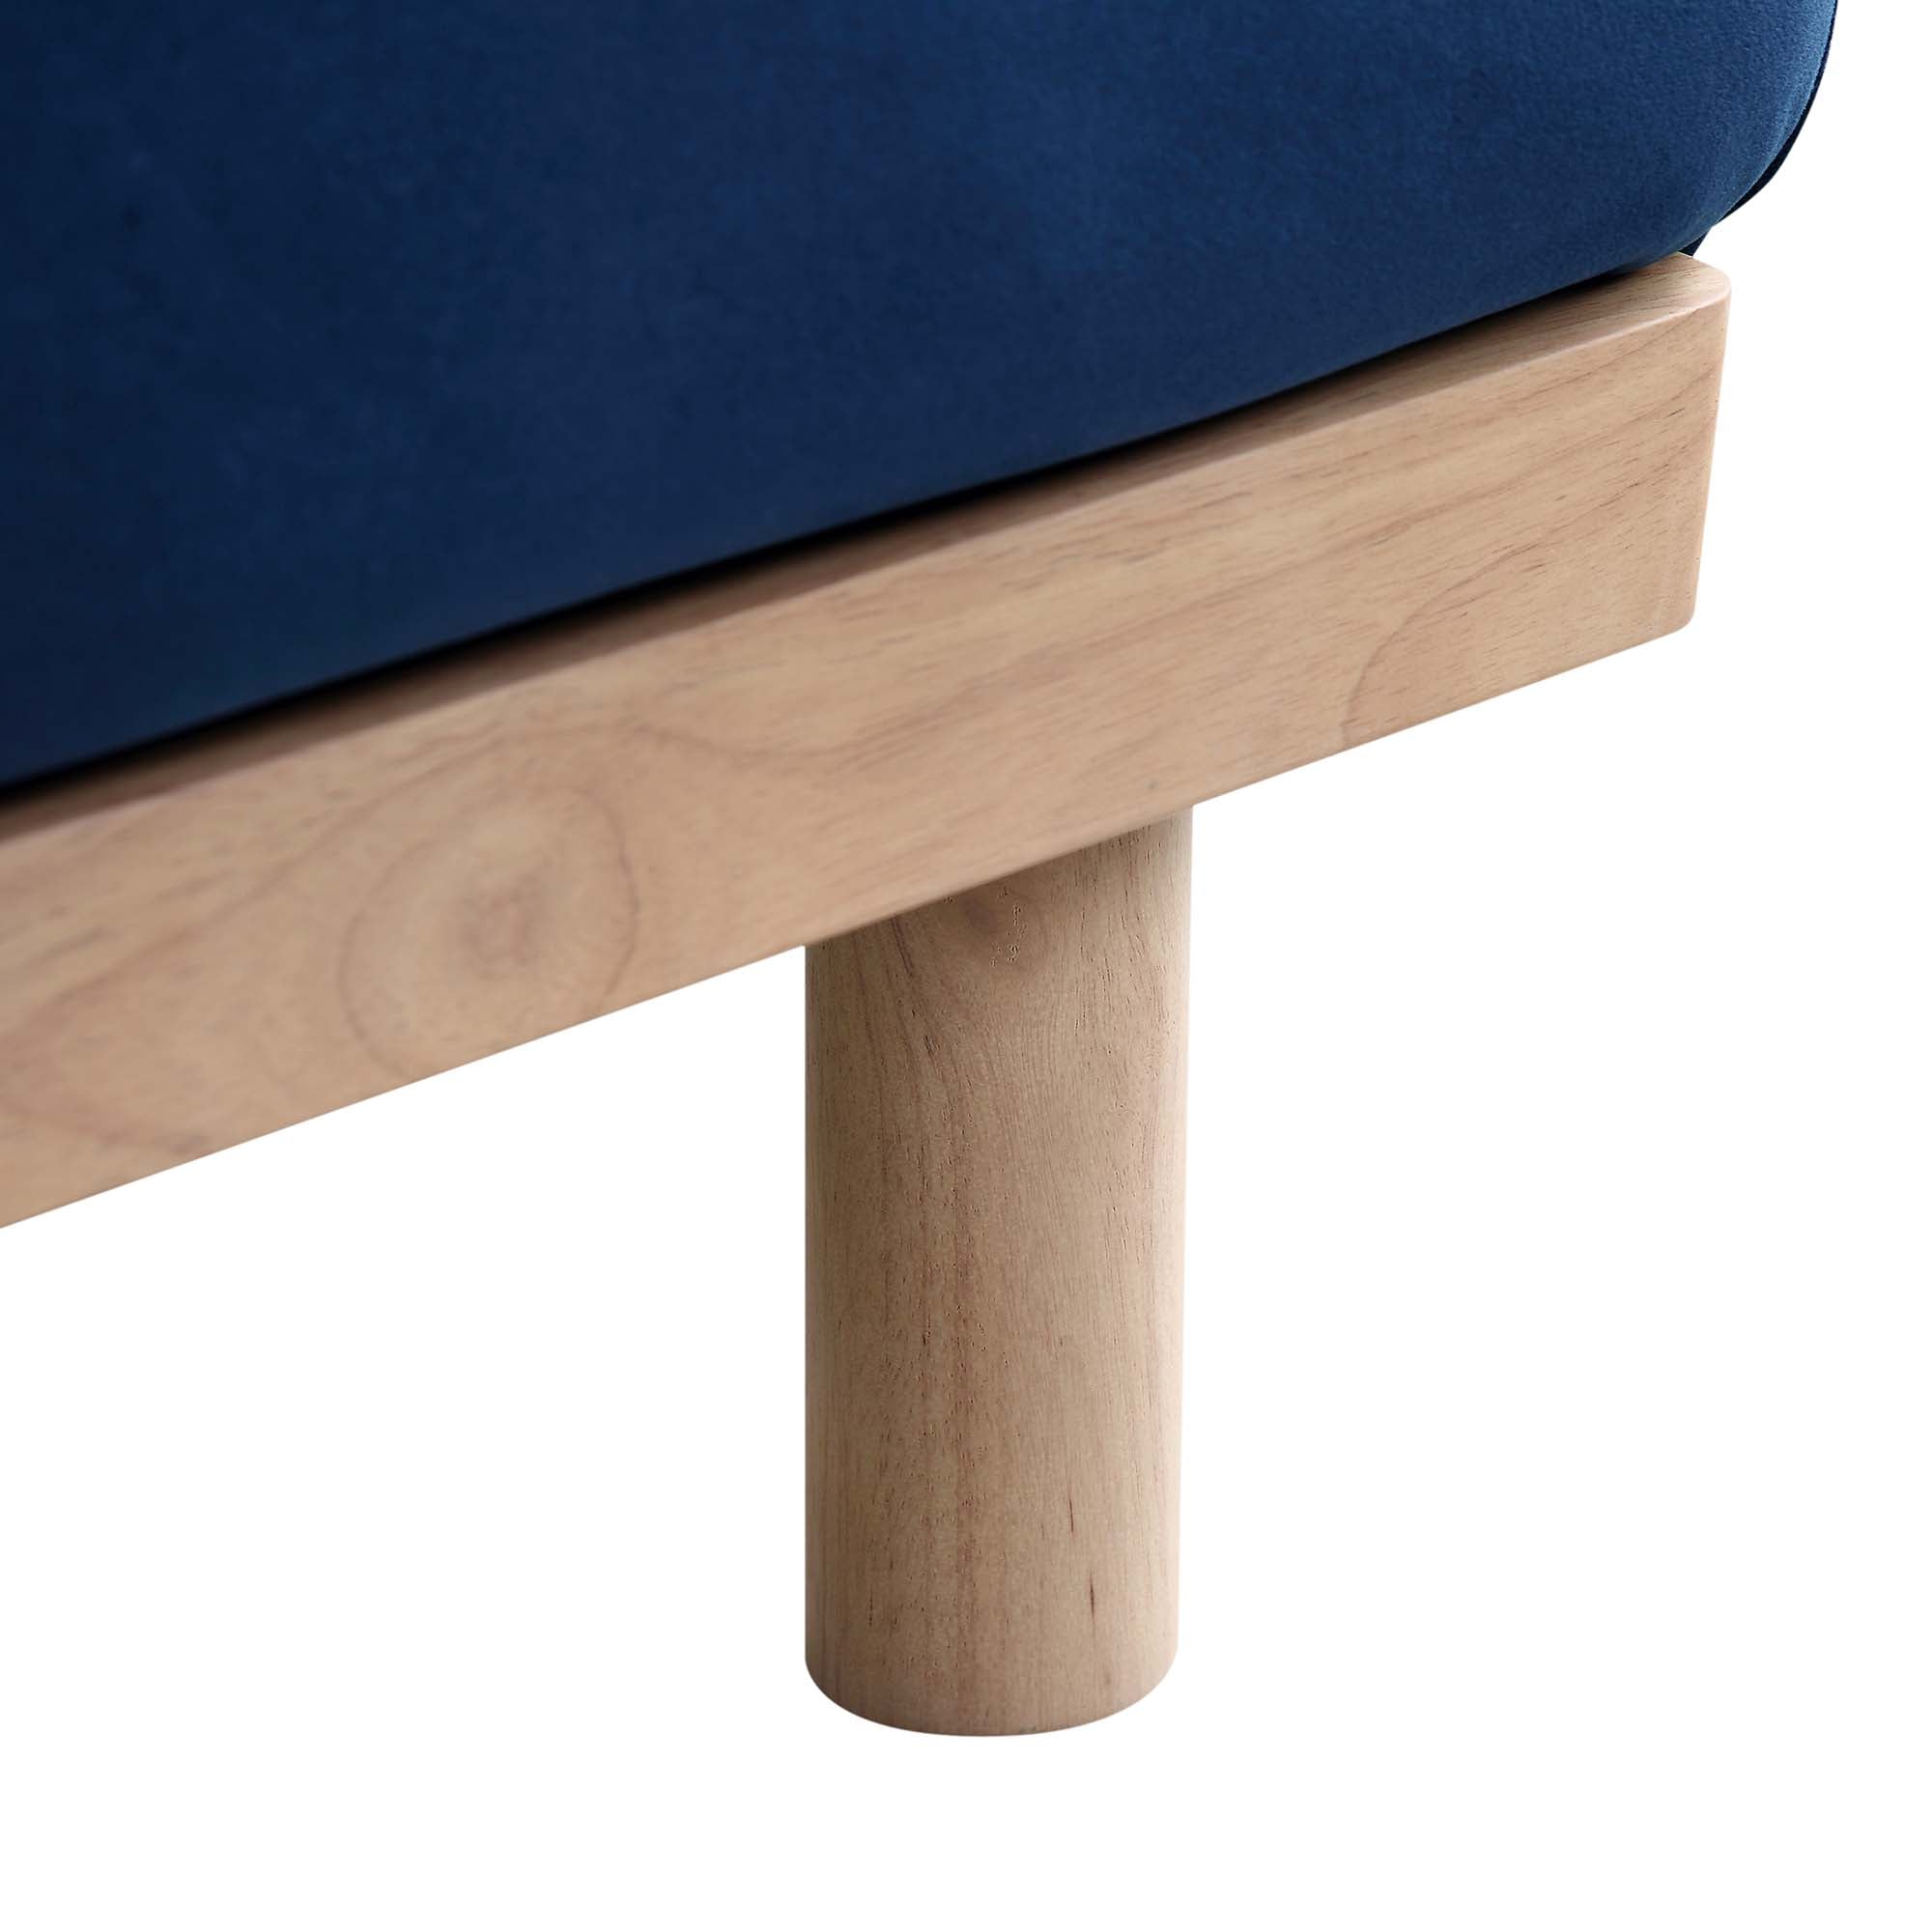 Timber Navy Blue Velvet Sofa, Large 3-Seater Chaise Sofa Left Hand